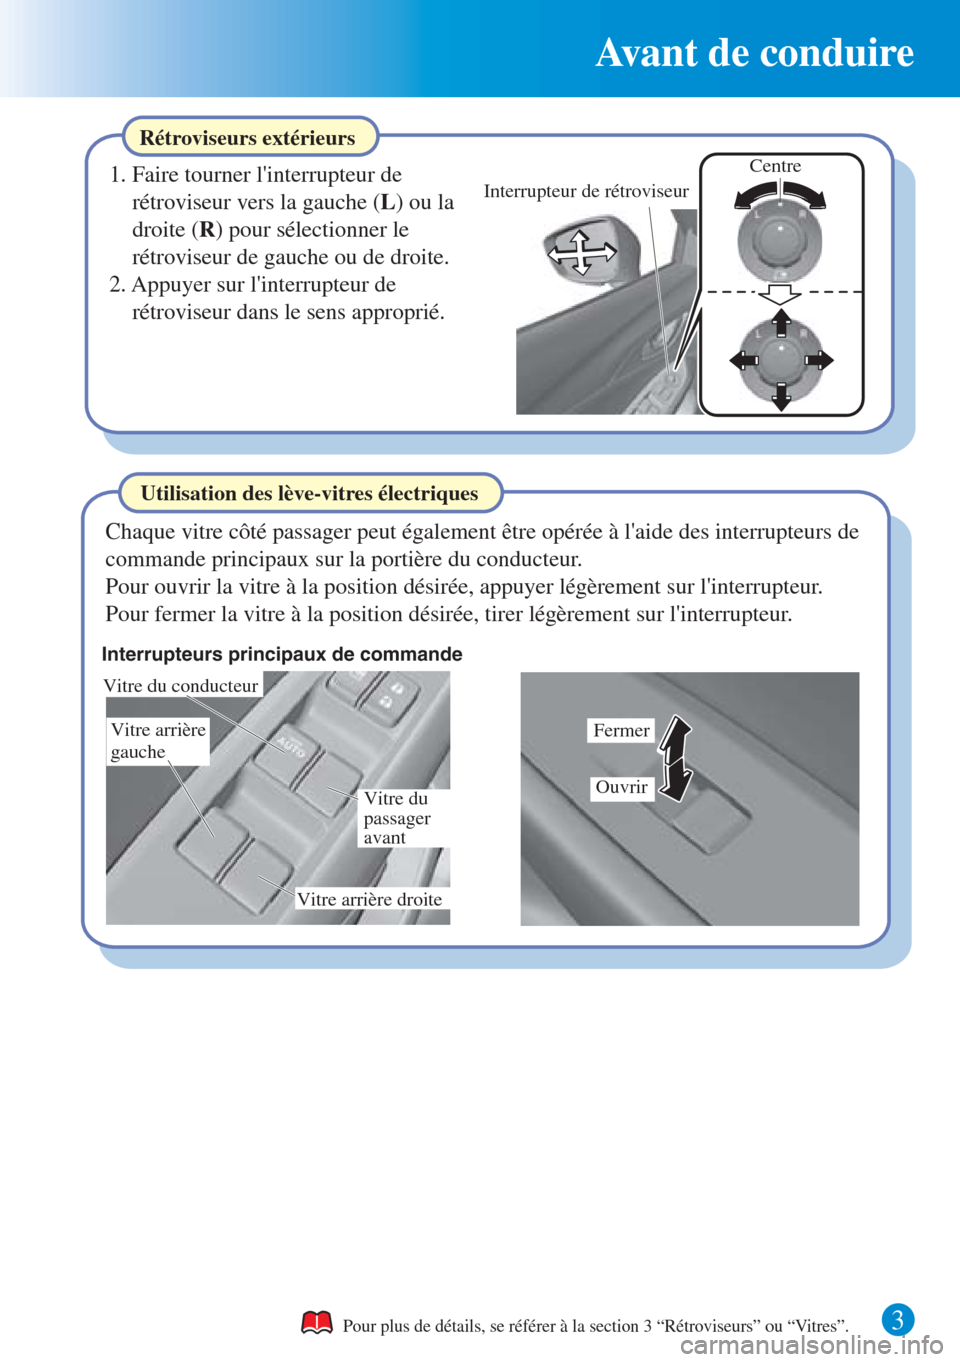 MAZDA MODEL CX-3 2016  Guide dutilisation rapide (in French)  3 
Avant de conduire
Rétroviseurs extérieurs
1. Faire tourner linterrupteur de 
rétroviseur vers la gauche (L) ou la 
droite (R) pour sélectionner le 
rétroviseur de gauche ou de droite.
2. Appu